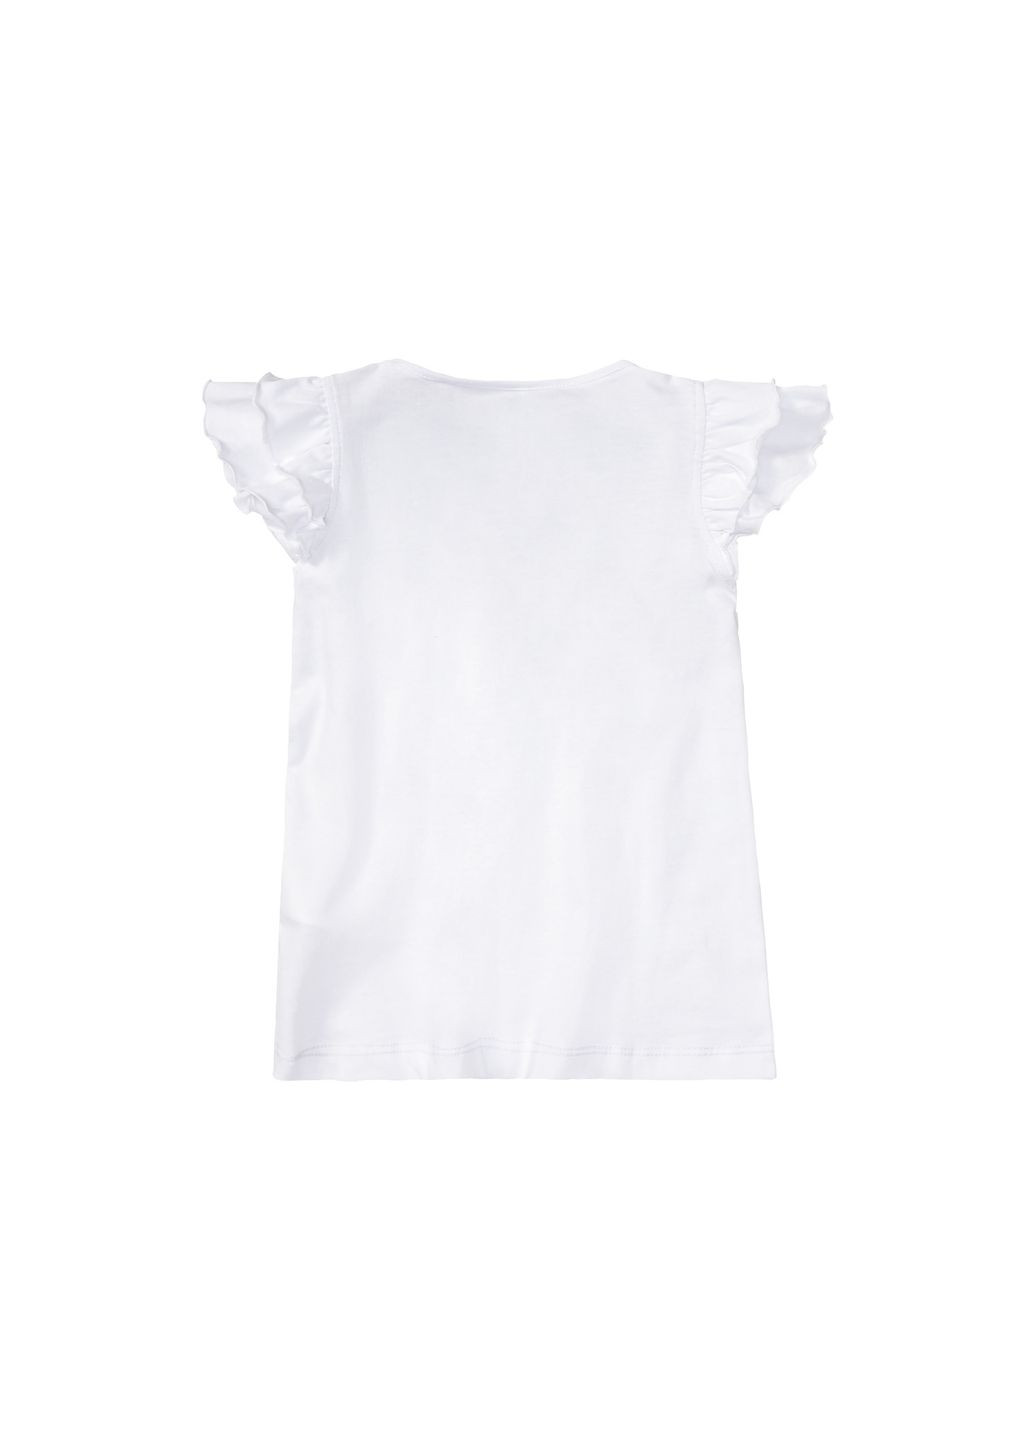 Біла демісезонна футболка з рюшами для дівчинки 403692-1 білий Lupilu